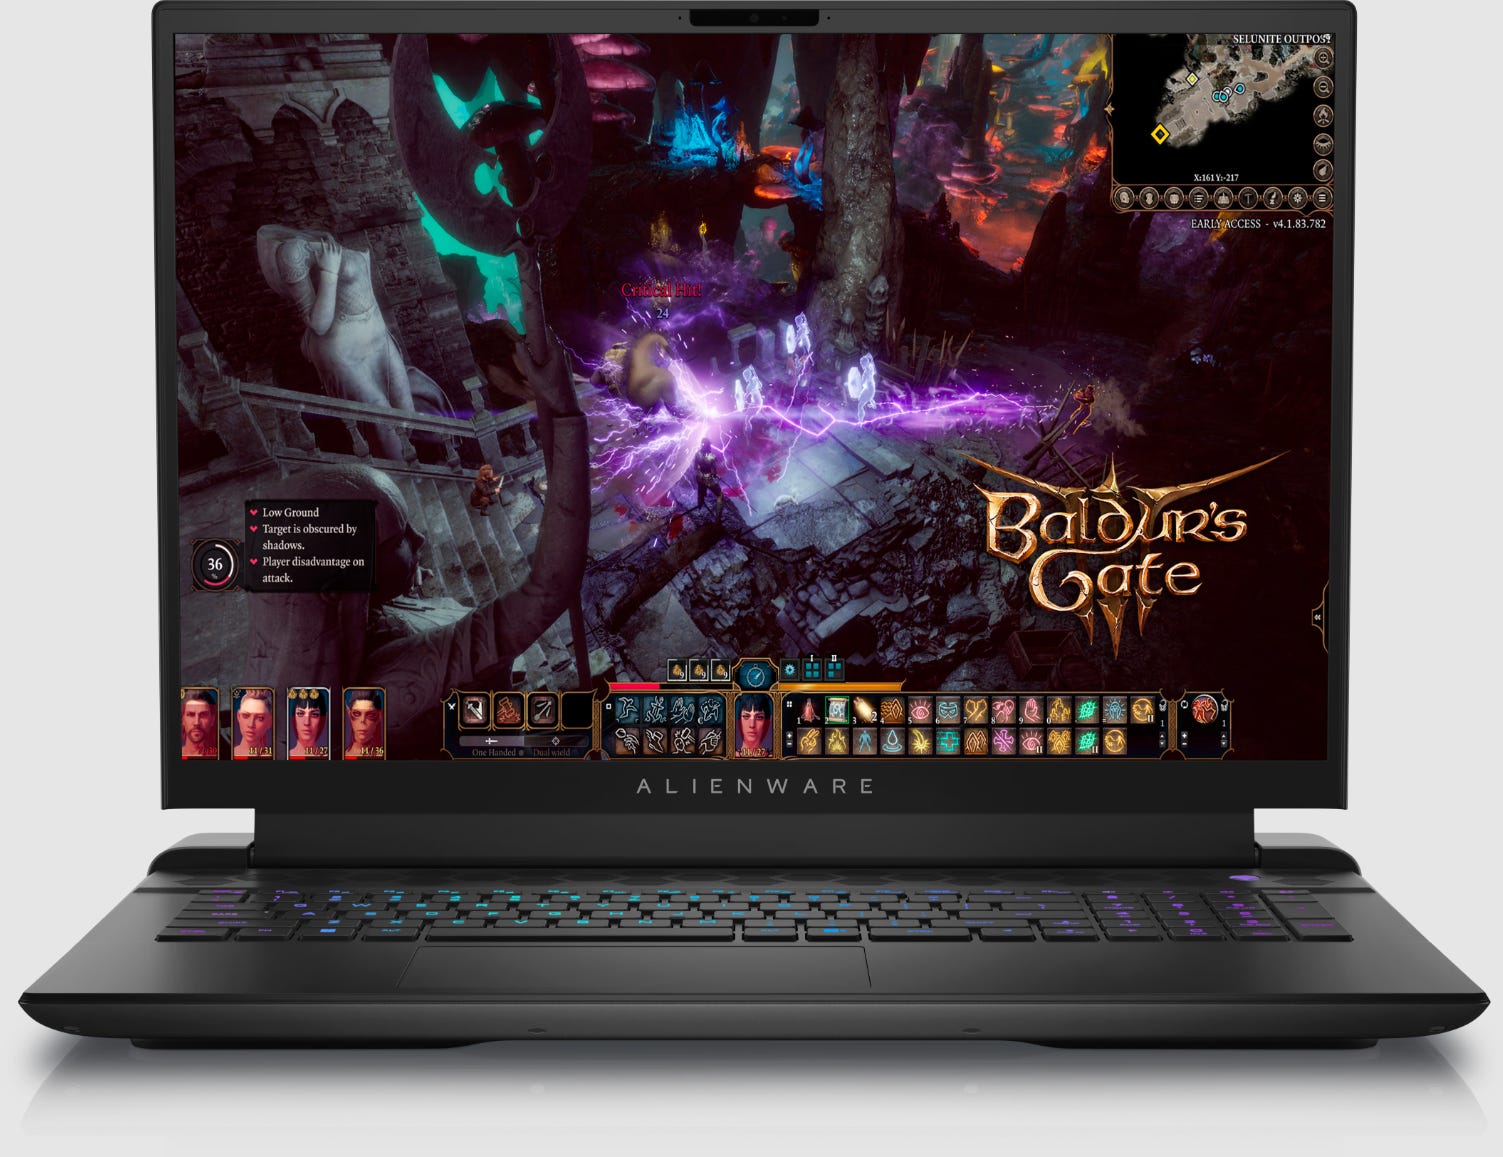 Ein Alienware M18-Gaming-Laptop, auf dem das Spiel Baldur's Gate zu sehen ist.